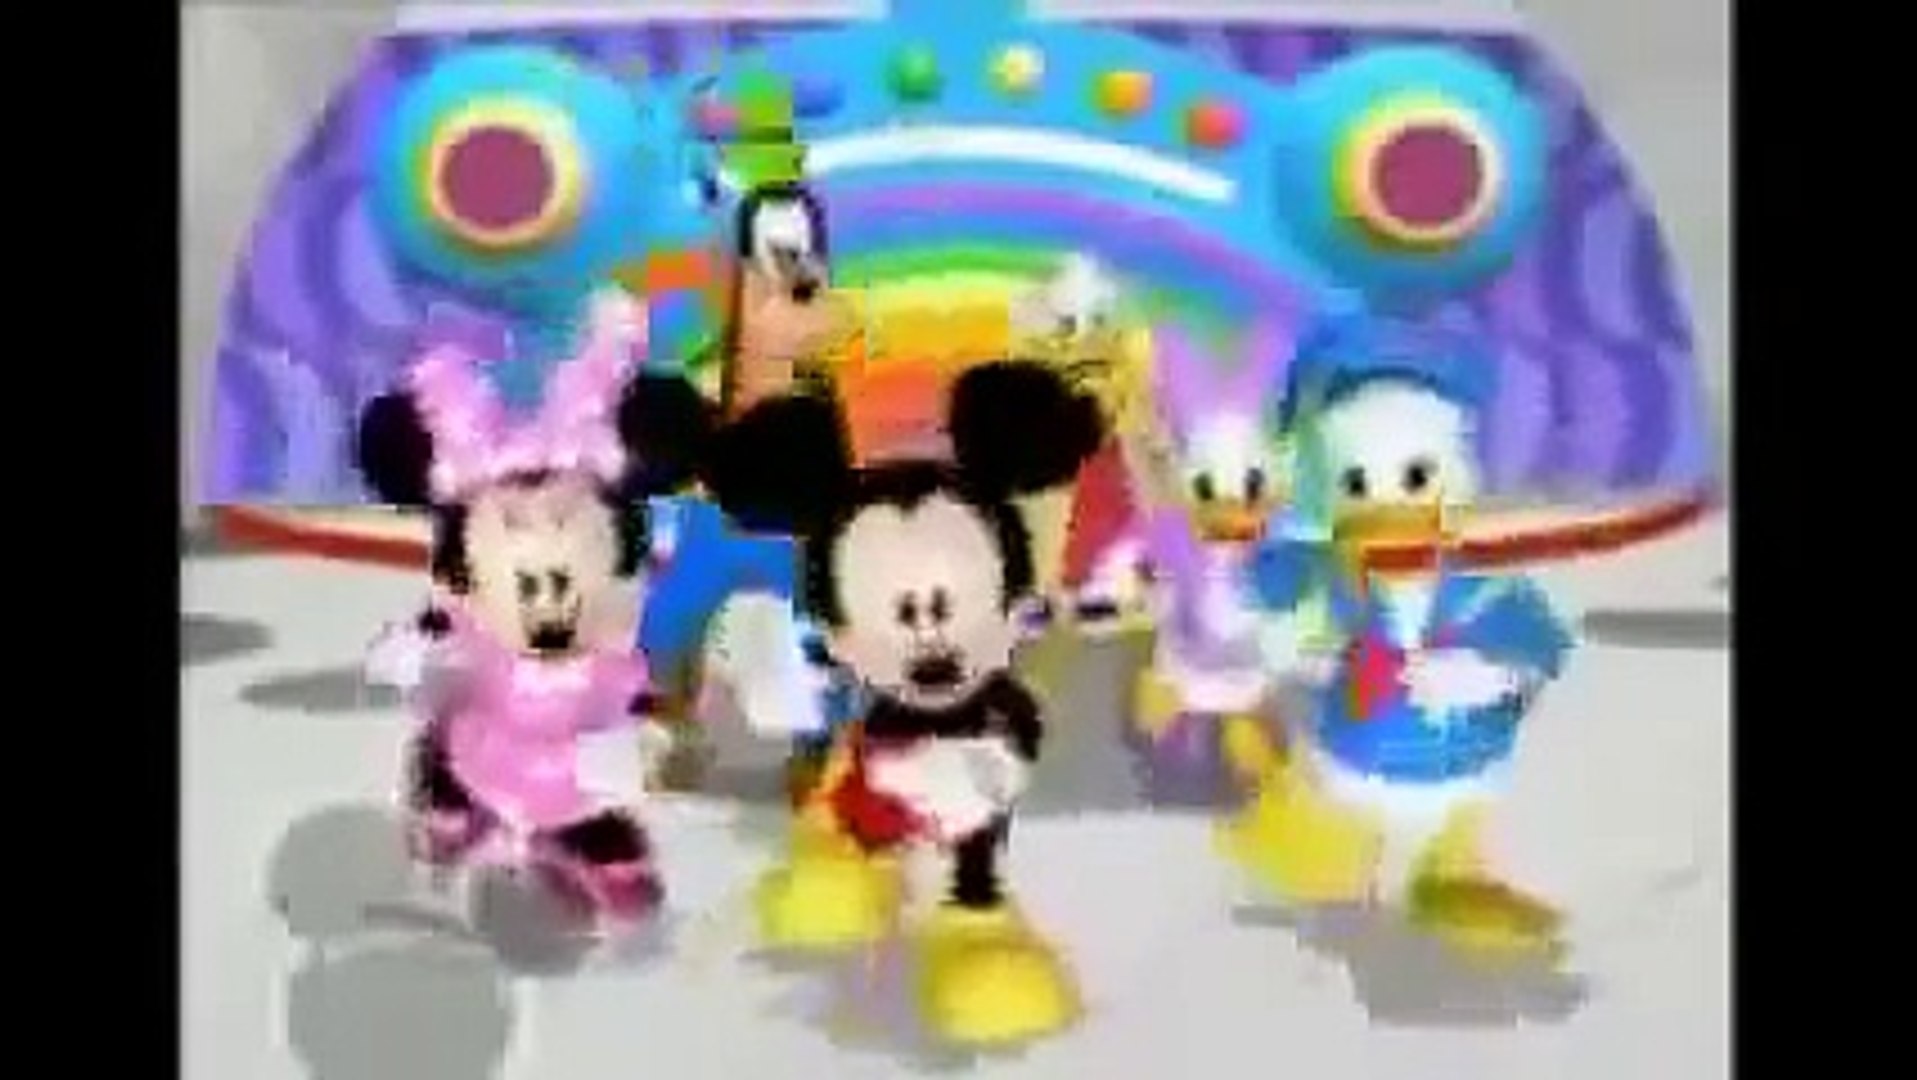 Mickey's Color Adventure, S1 E22, Full Episode